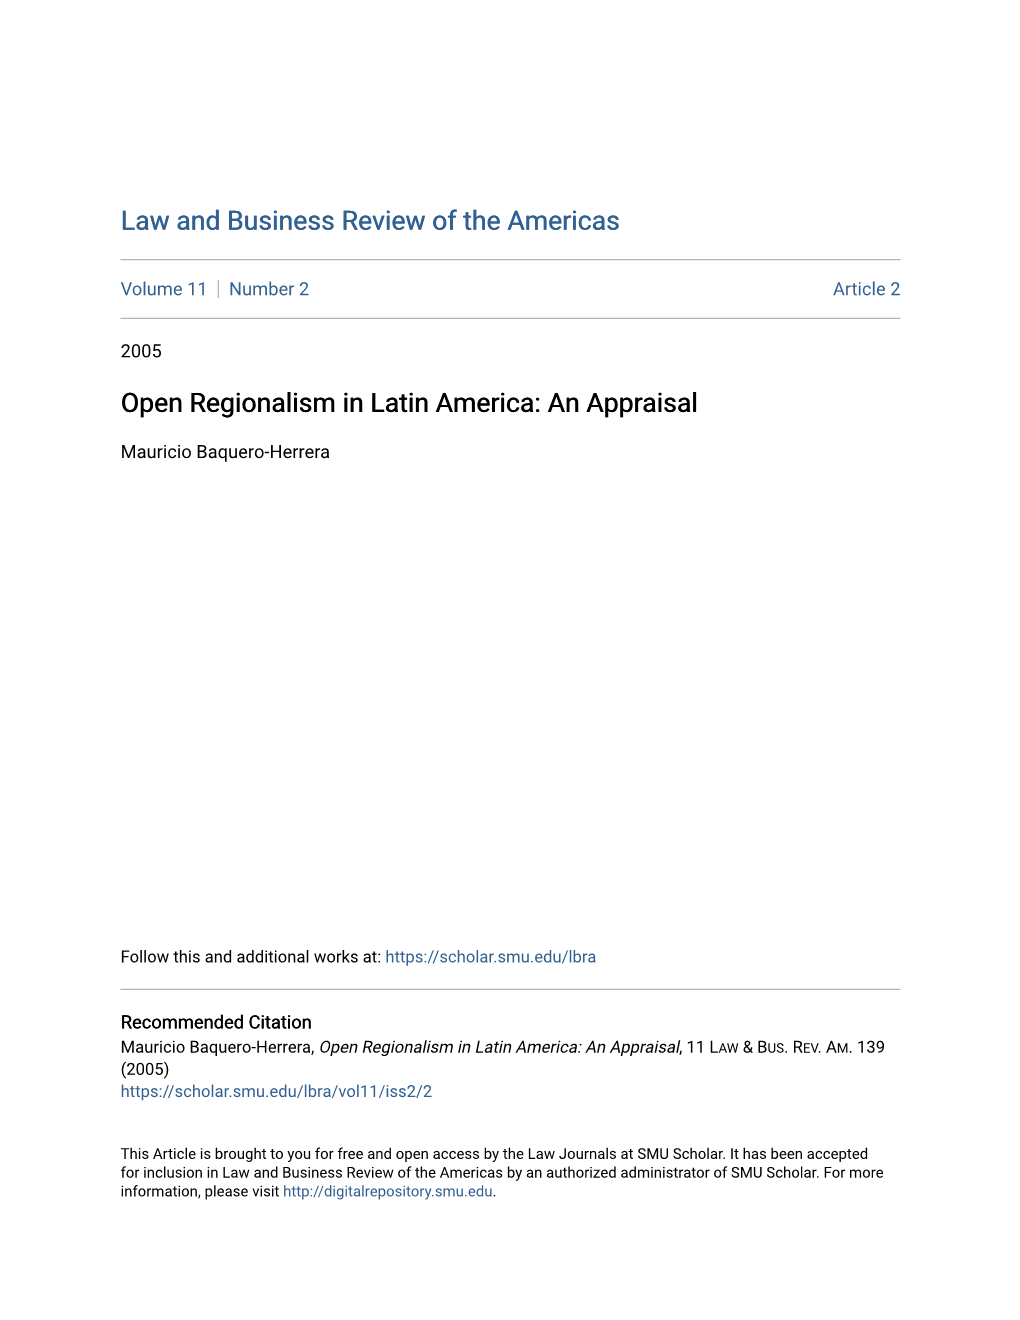 Open Regionalism in Latin America: an Appraisal